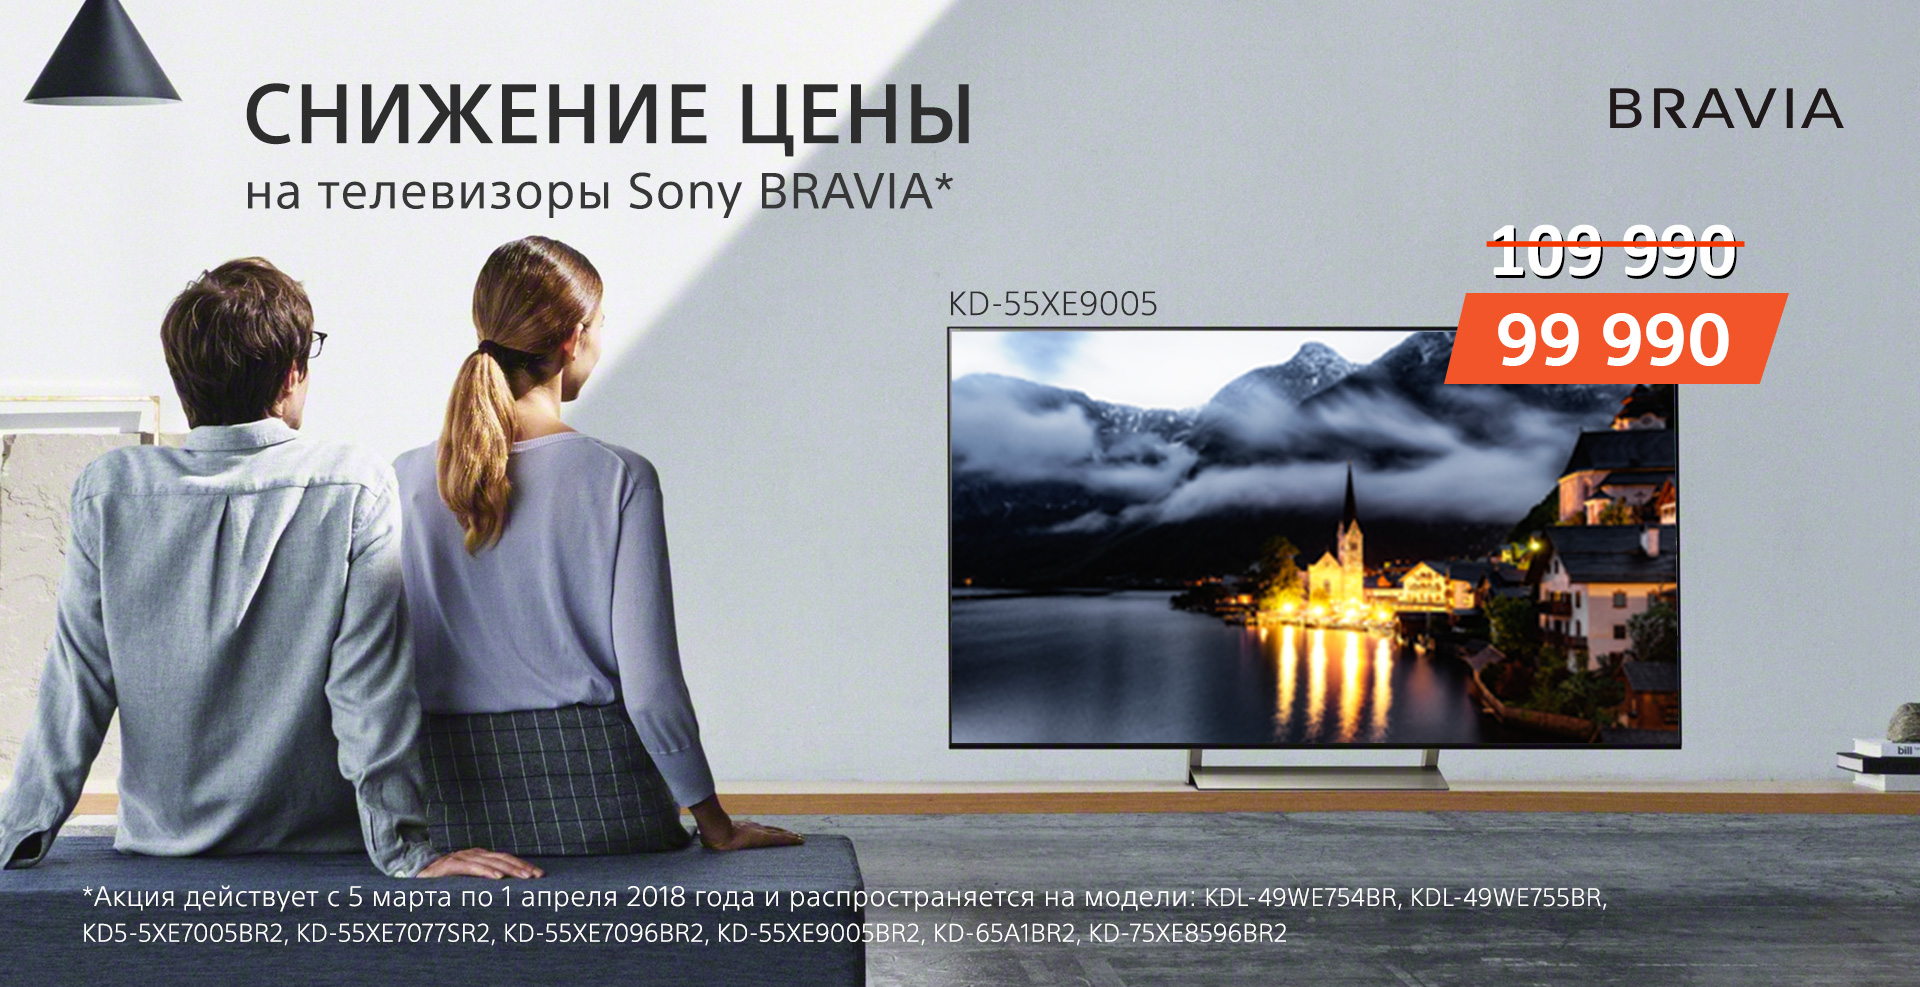 Снижение цены на телевизоры Sony BRAVIA*